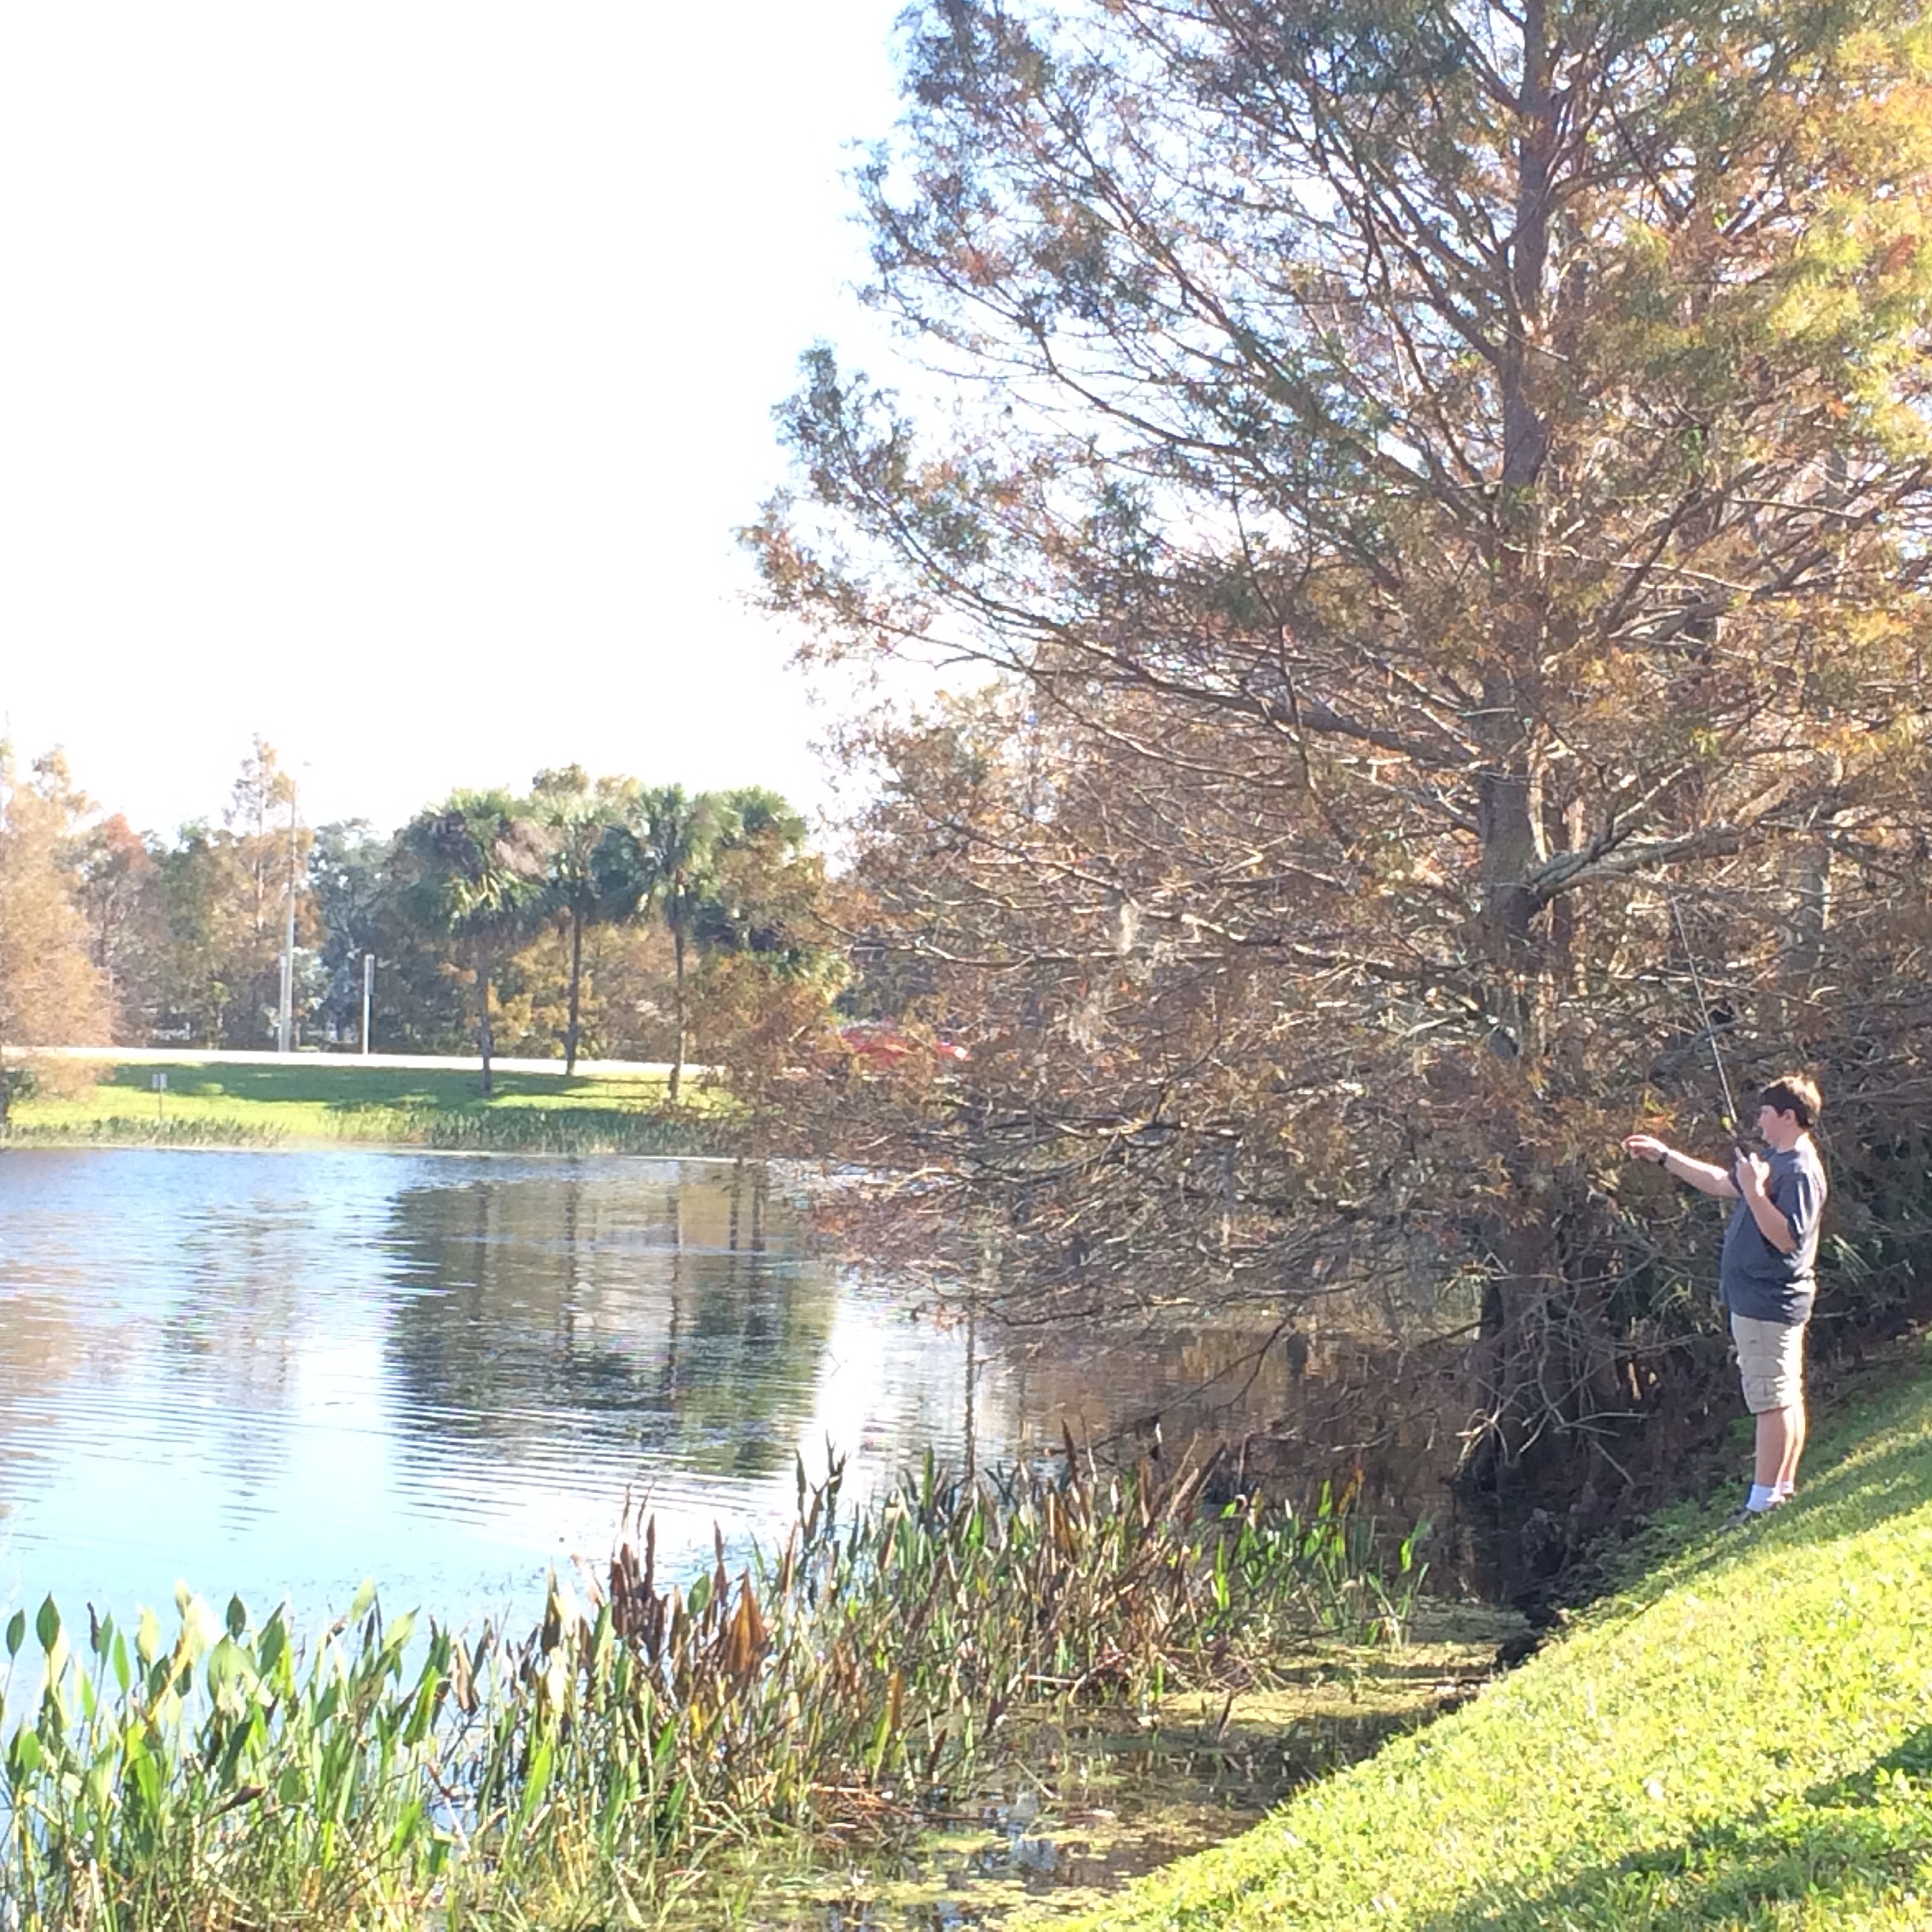 parenting while fishing at a lake